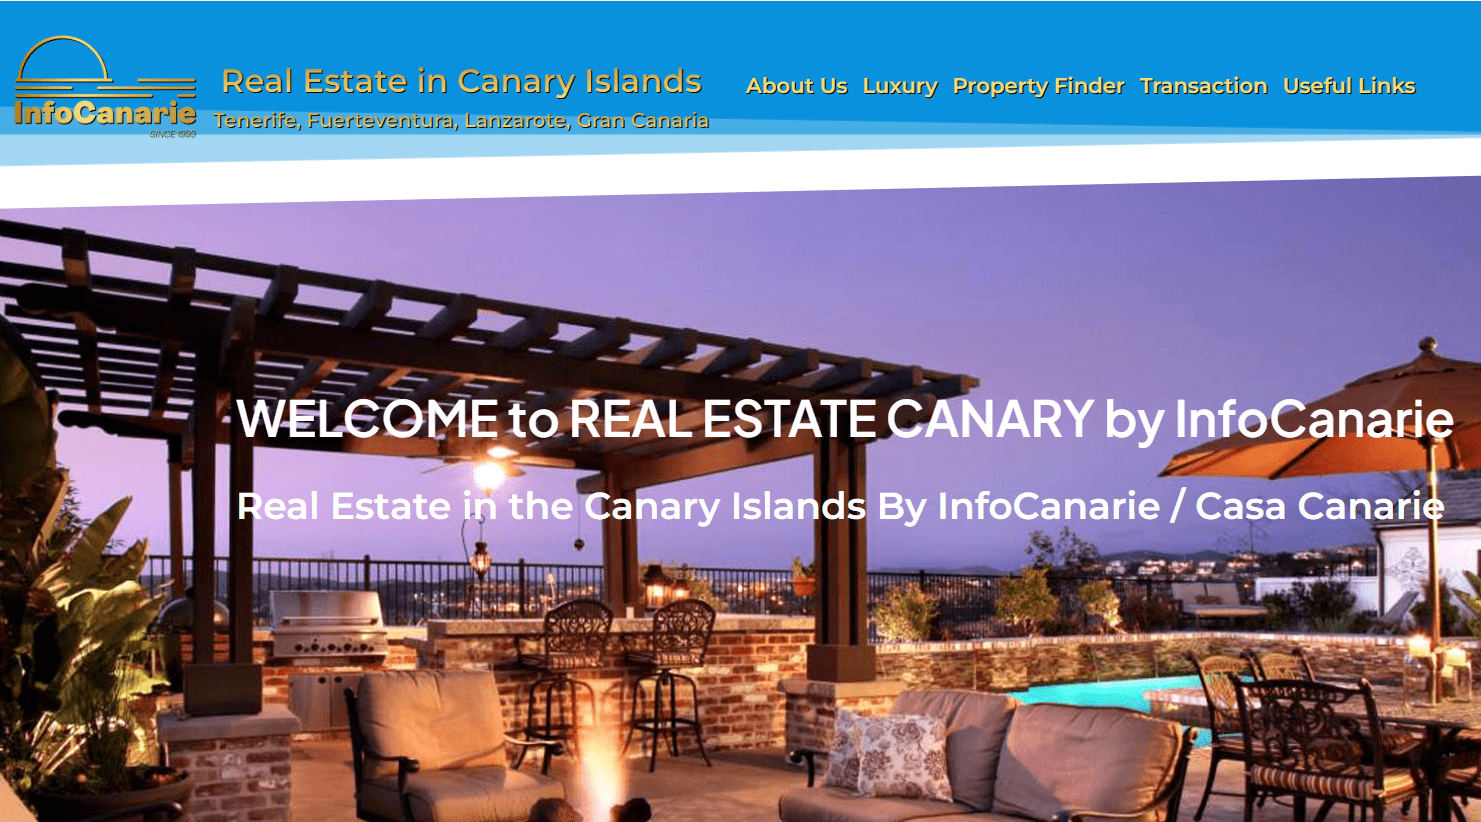 real estate canary islands by InfoCanarie & Casa Canarie tenerife Fuerteventura lanzarote Gran Canaria